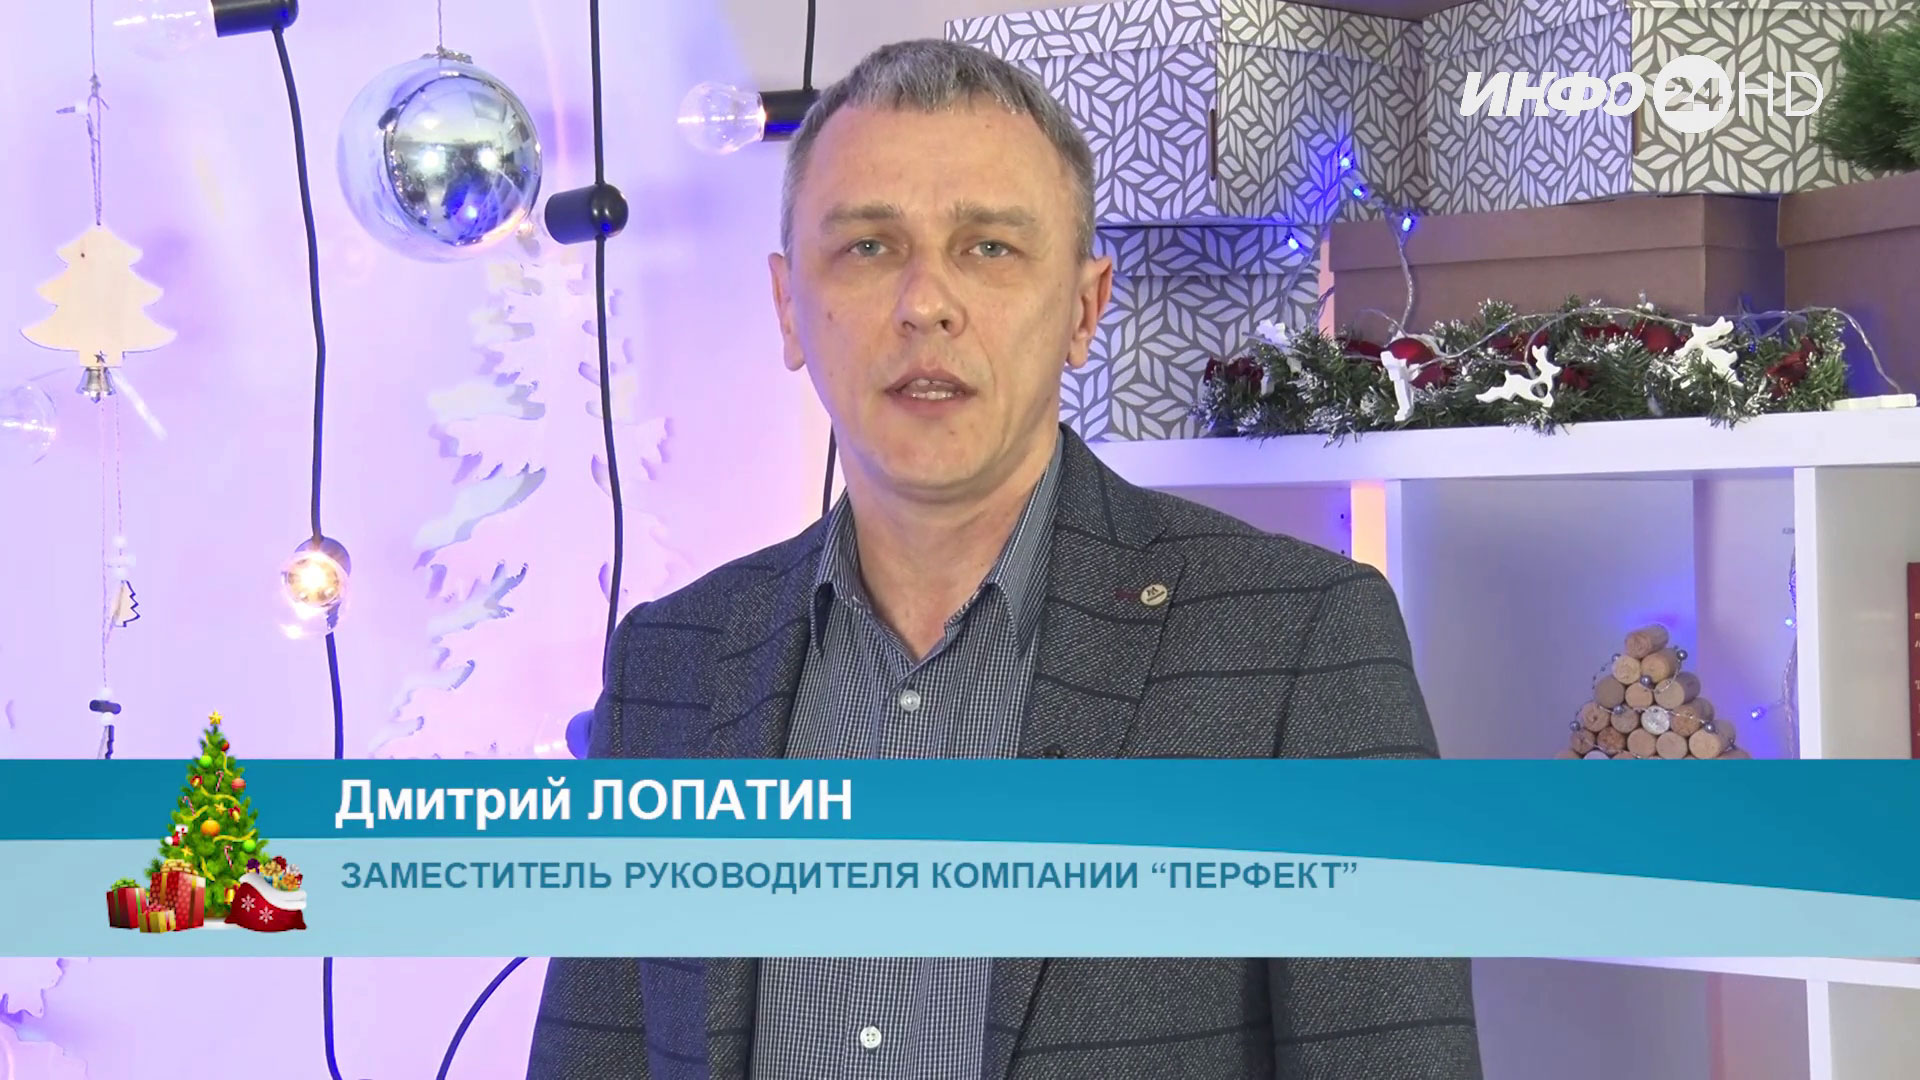 Новогоднее поздравление - 2022. Дмитрий Лопатин, заместитель руководителя компании "Перфект"